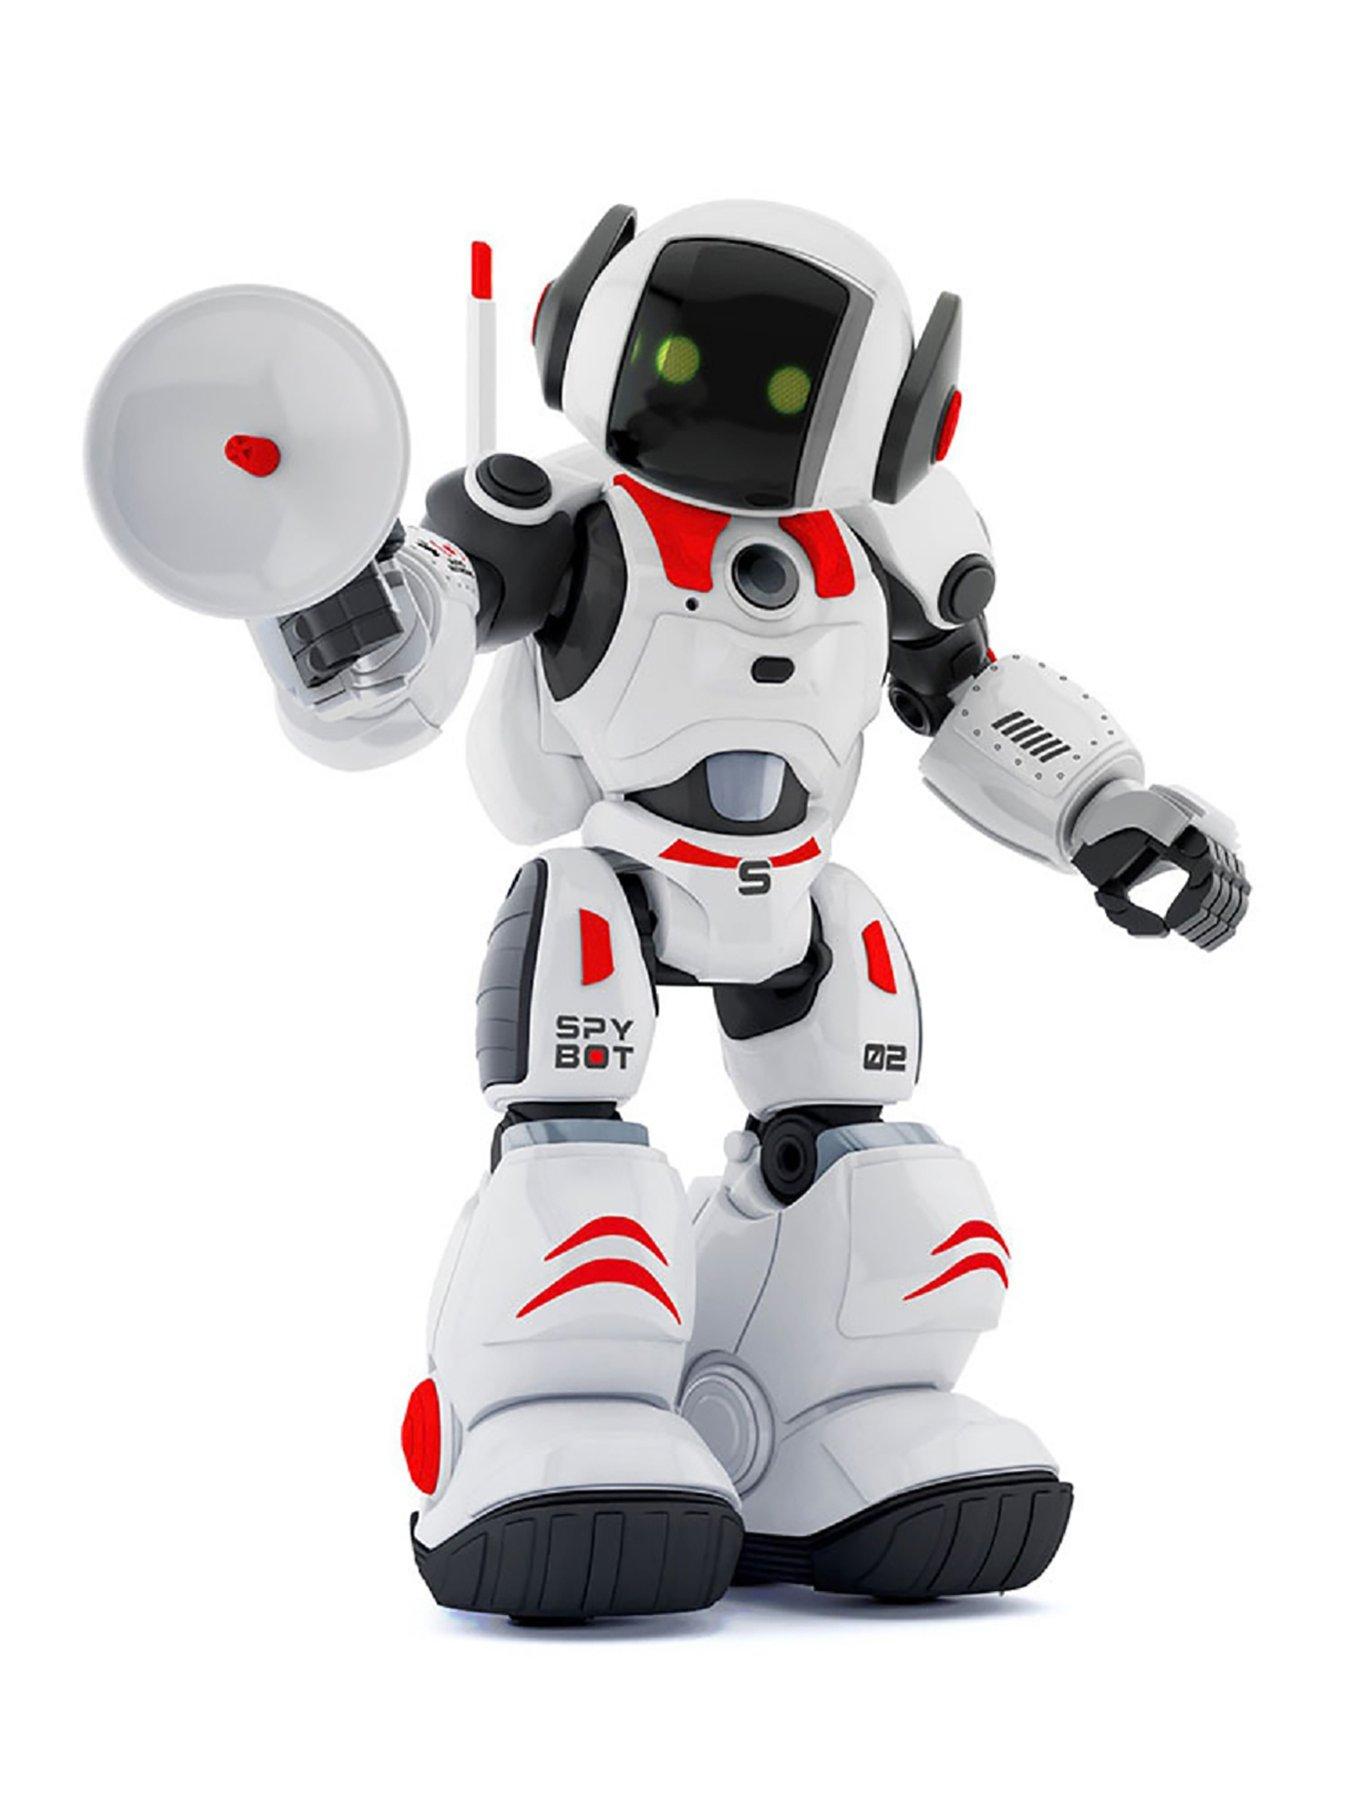 Xtrem Bots - Cyber Bot